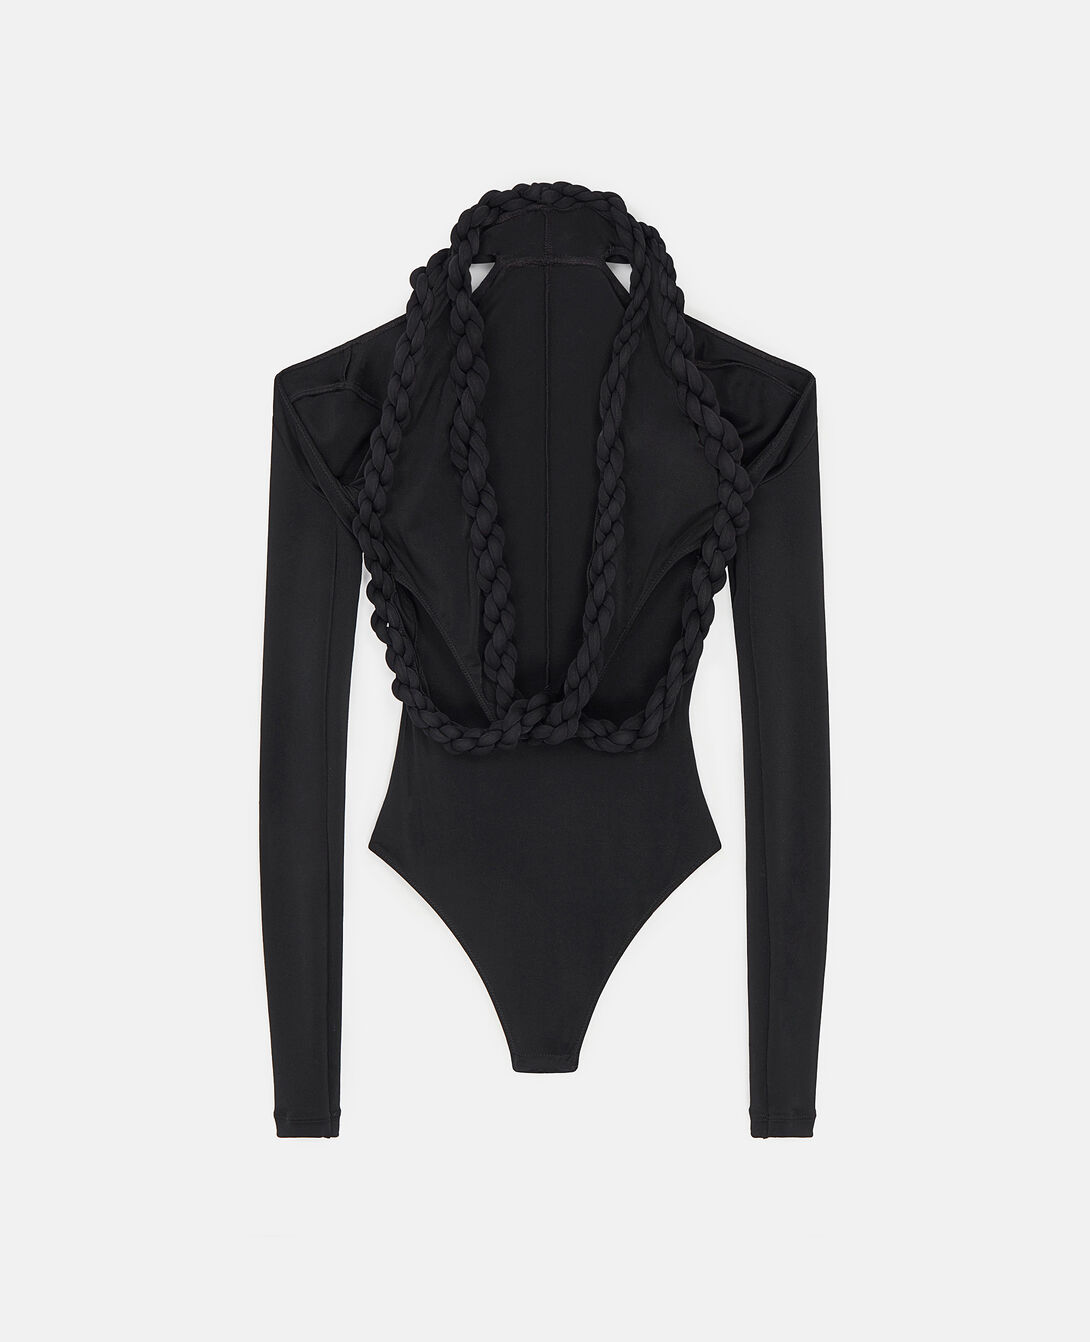 Mabel black satin/lace bodysuit - svlabel.com